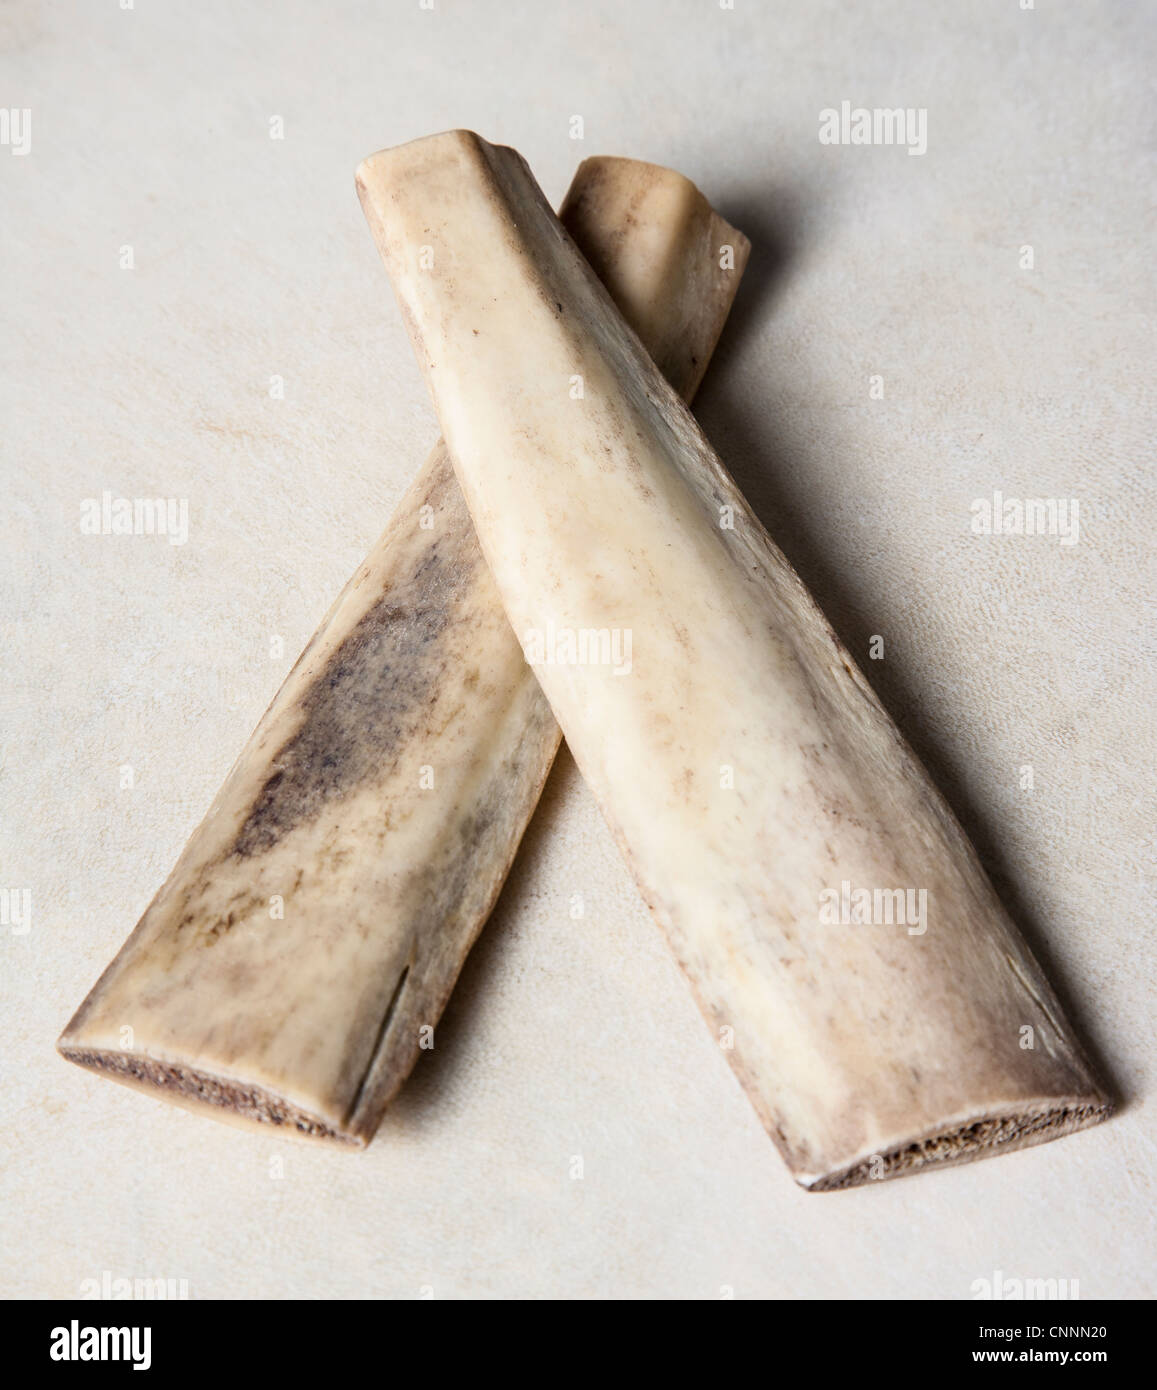 Rhythmus-Knochen in traditioneller irischer Musik und Kalb Knochen verwendet. Stockfoto